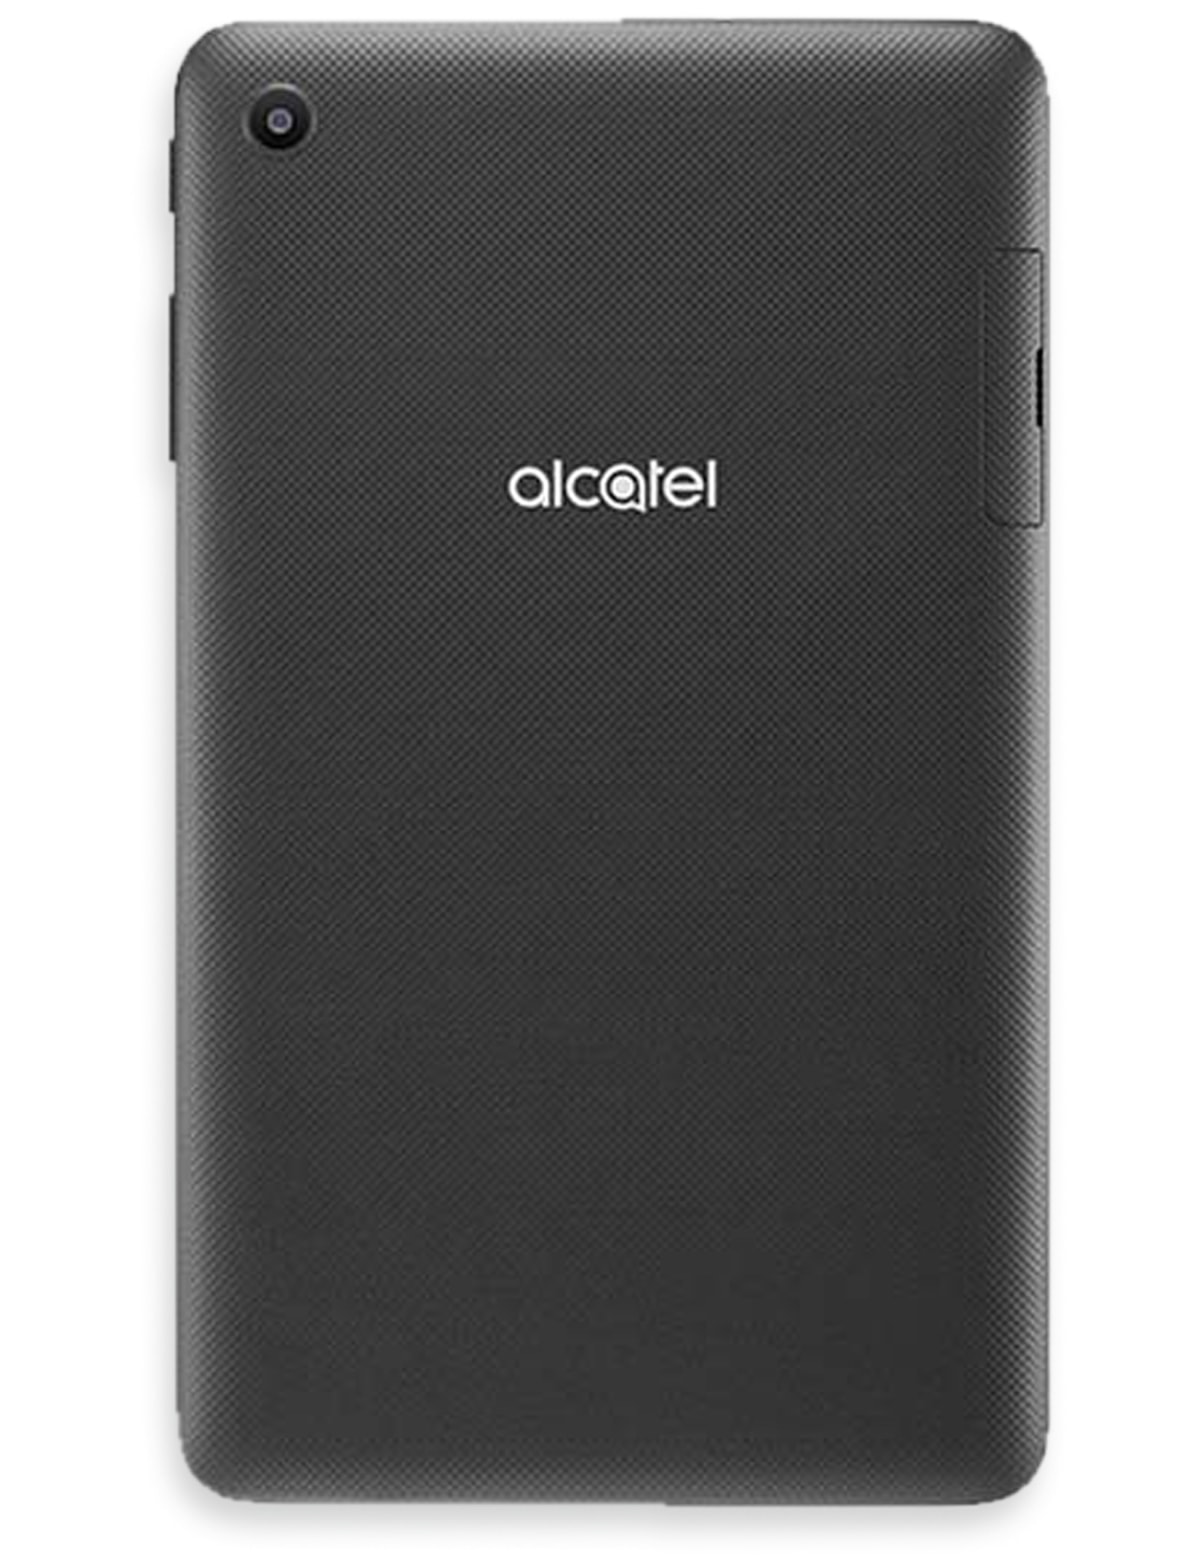 ALCATEL Tablet 1T 8068, 7W, Prime Black